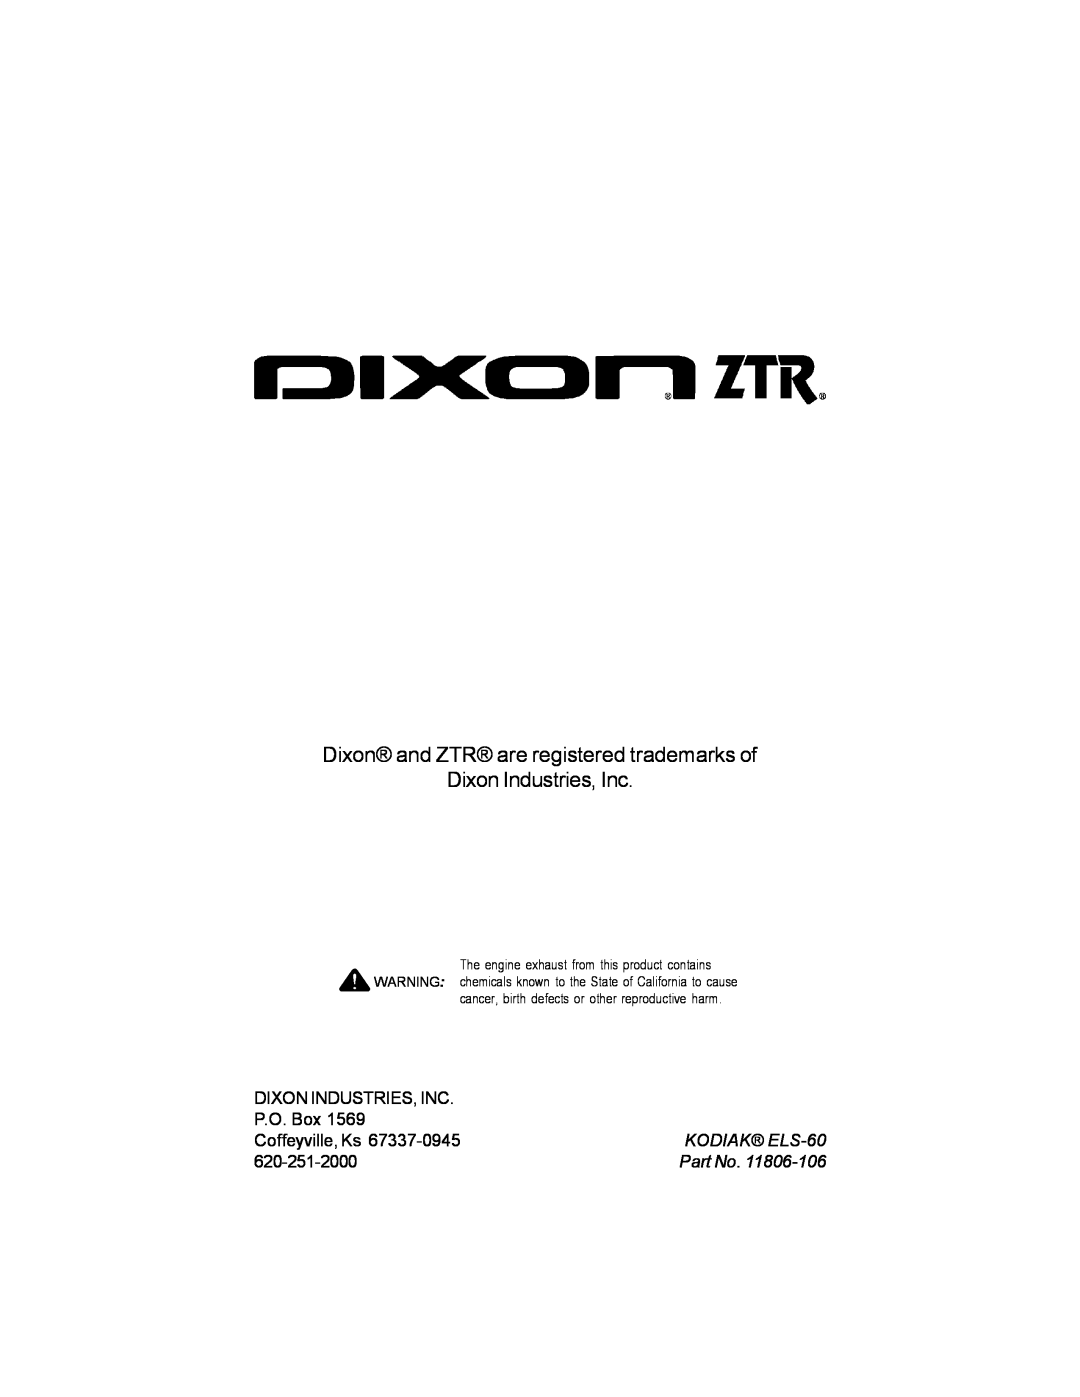 Dixon ELS 60 Dixon and ZTR are registered trademarks of Dixon Industries, Inc, P.O. Box, Coffeyville, Ks, KODIAK ELS-60 